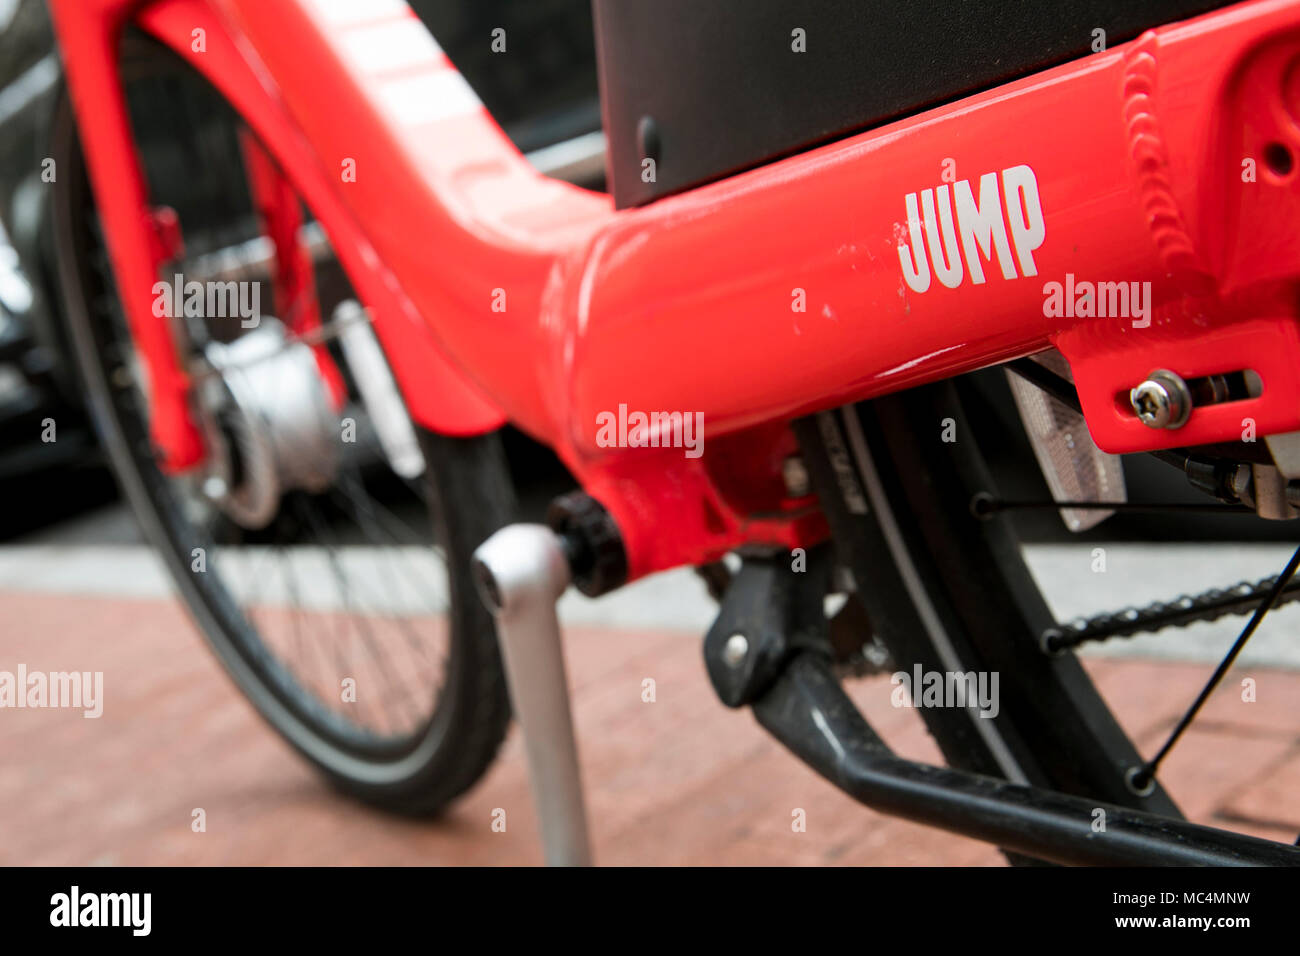 Un salto Bike logo è visibile su un dockless bicicletta elettrica condividi bicicletta. Foto Stock